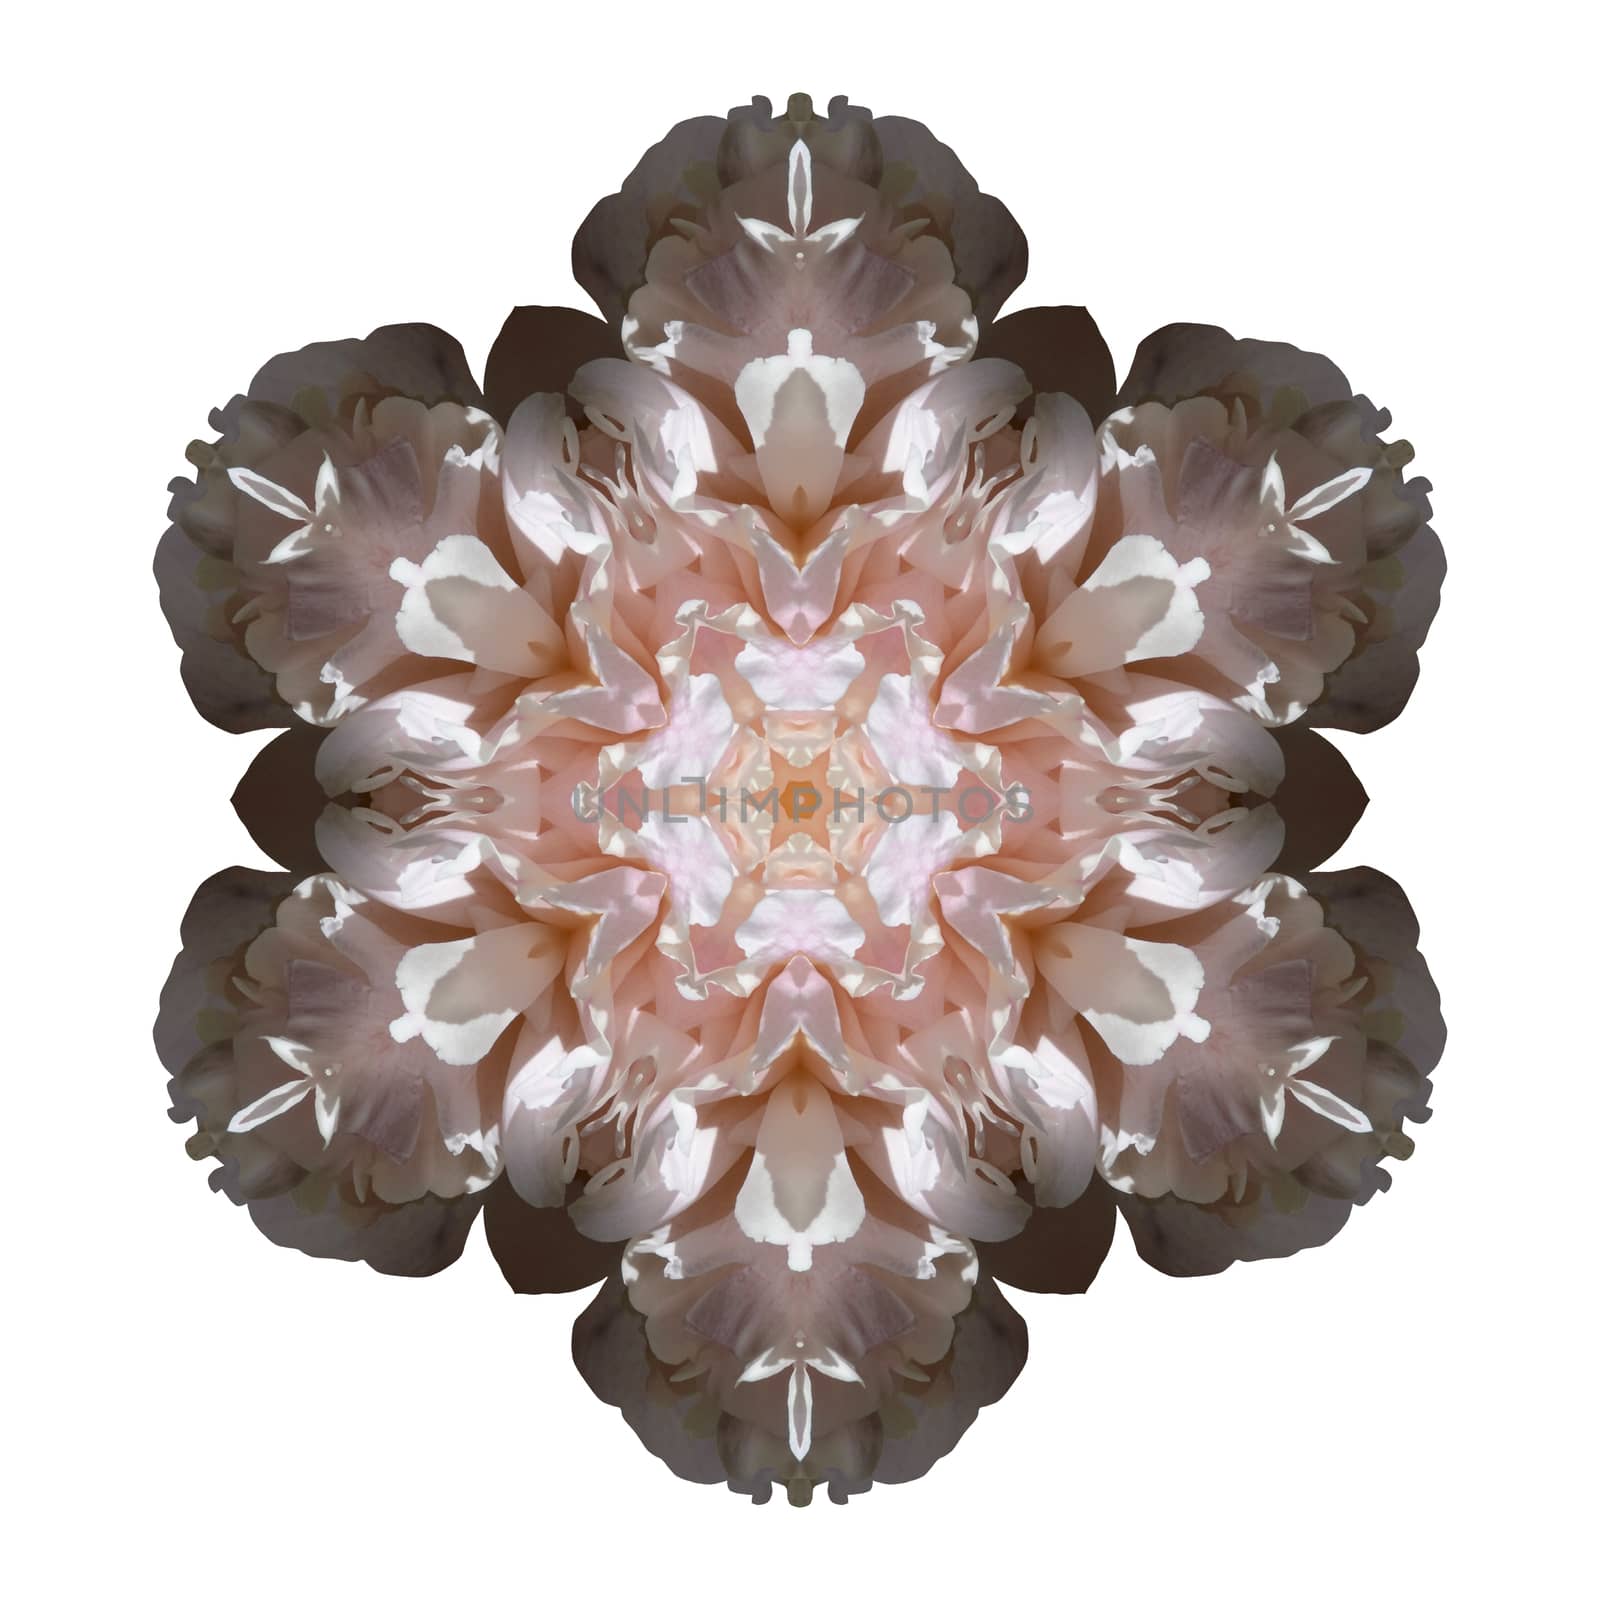 Flower mandala isolated on white background by migel